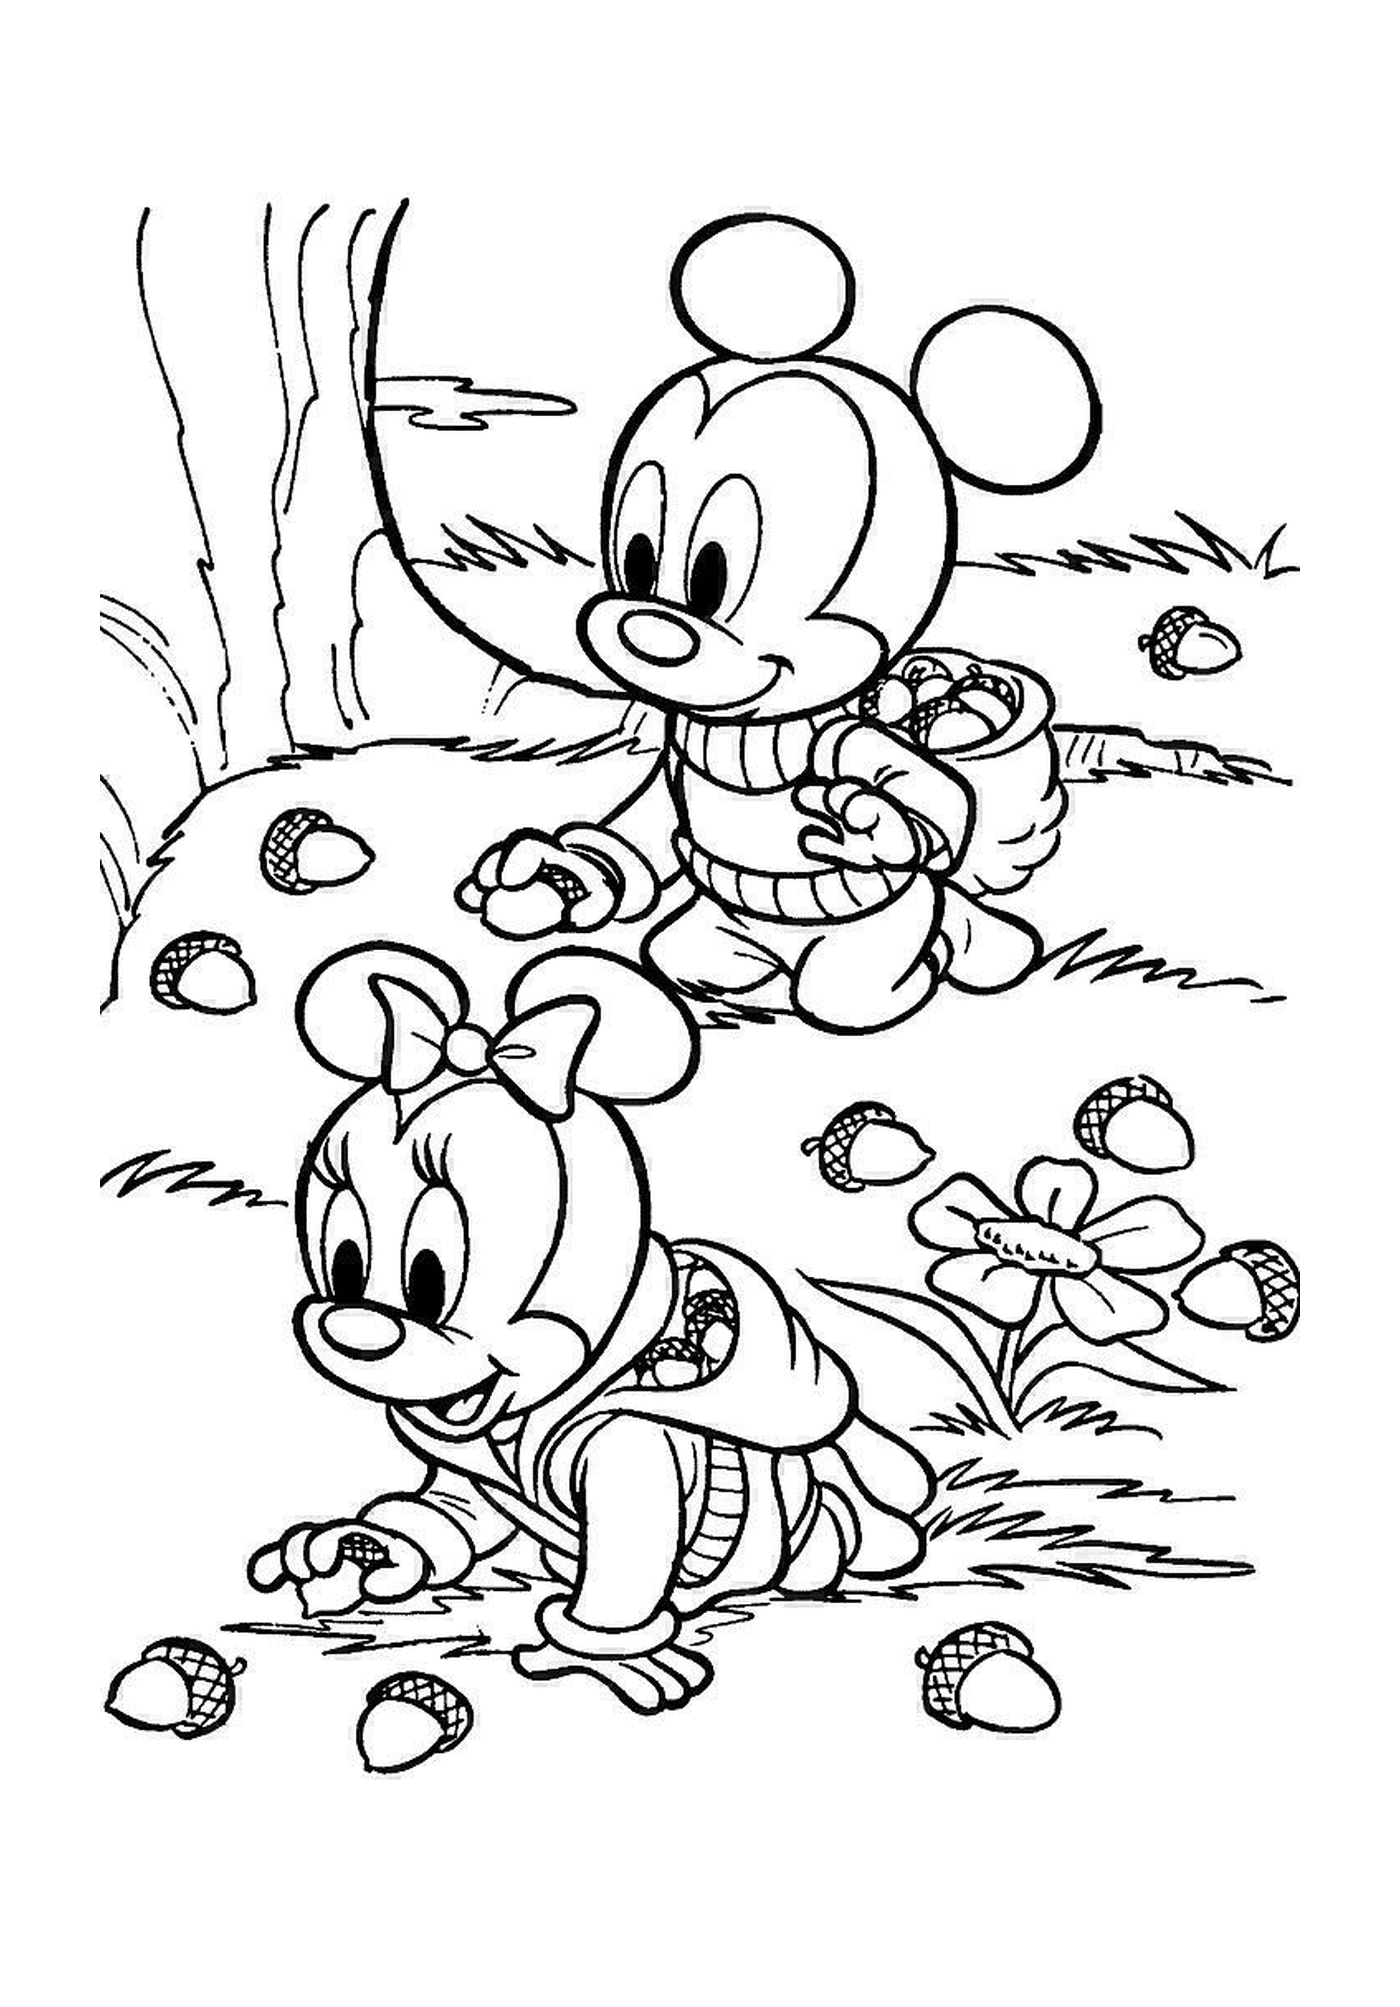  Un bambino di Minnie Mouse 